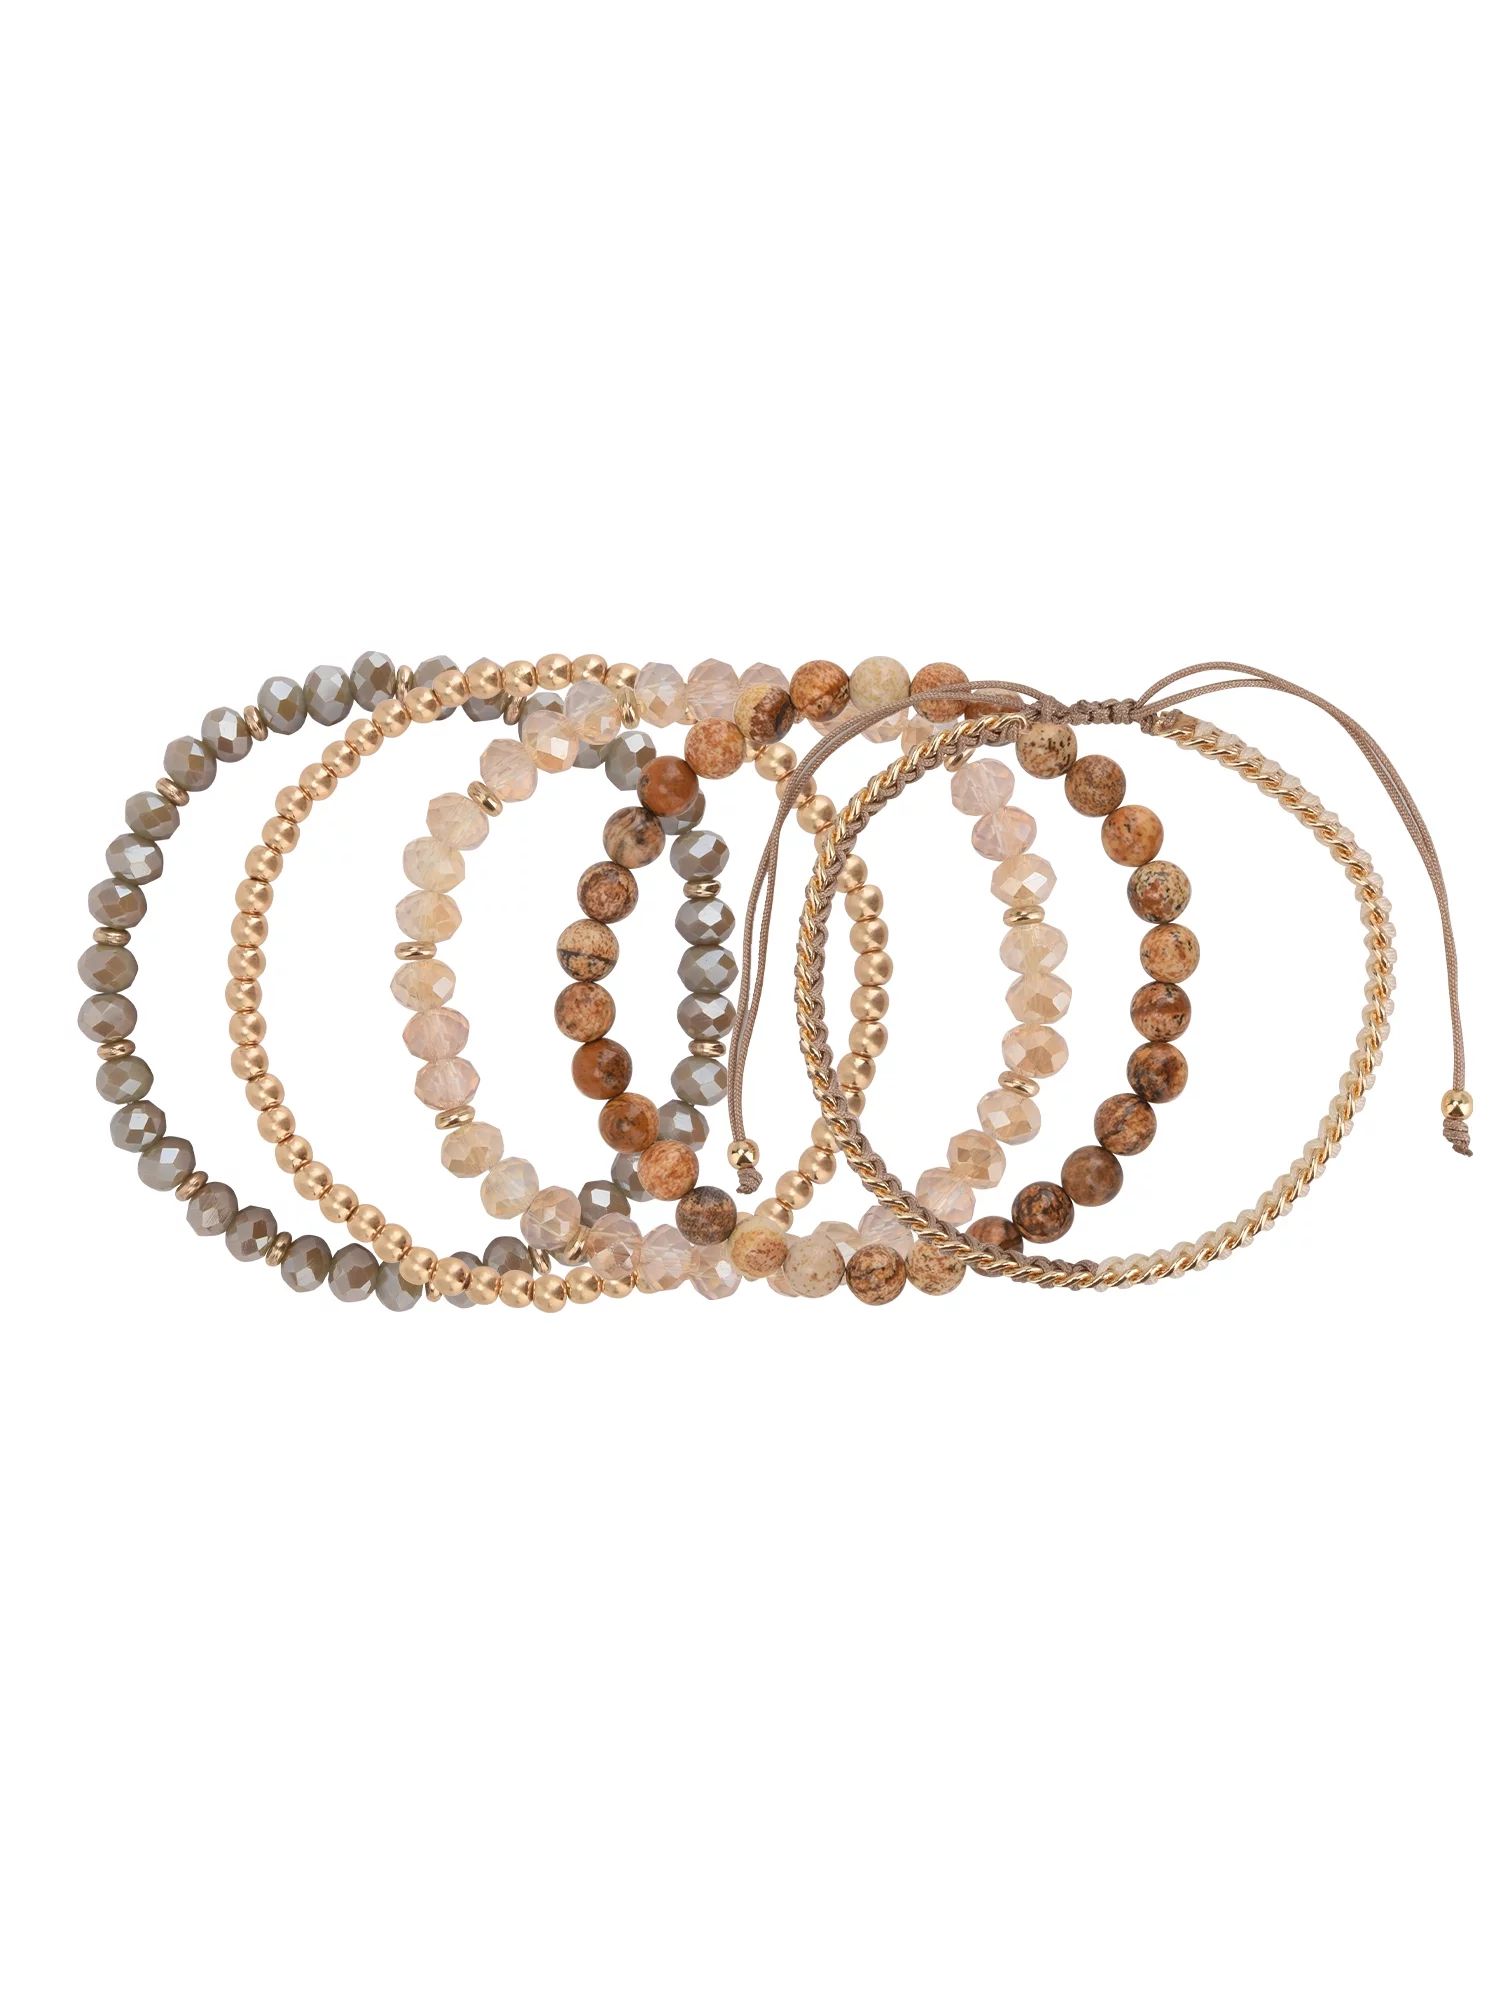 The Pioneer Woman - Women's Jewelry, Soft Gold-tone Bracelet Set with Genuine Stone Beads - Walma... | Walmart (US)